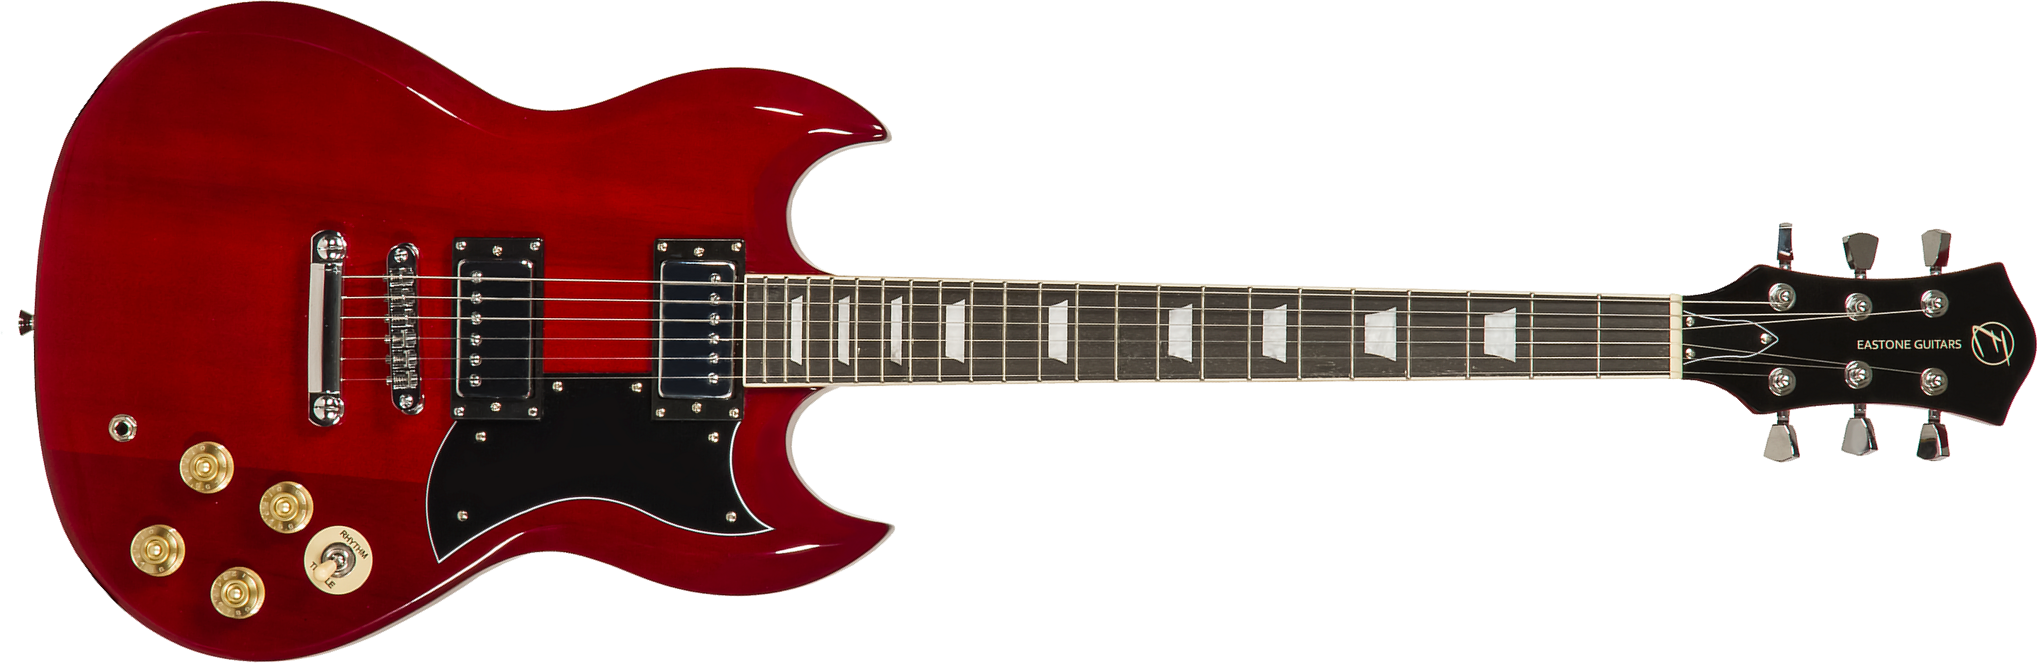 Eastone Sdc70 Hh Ht Pur - Red - Guitarra eléctrica de doble corte - Main picture